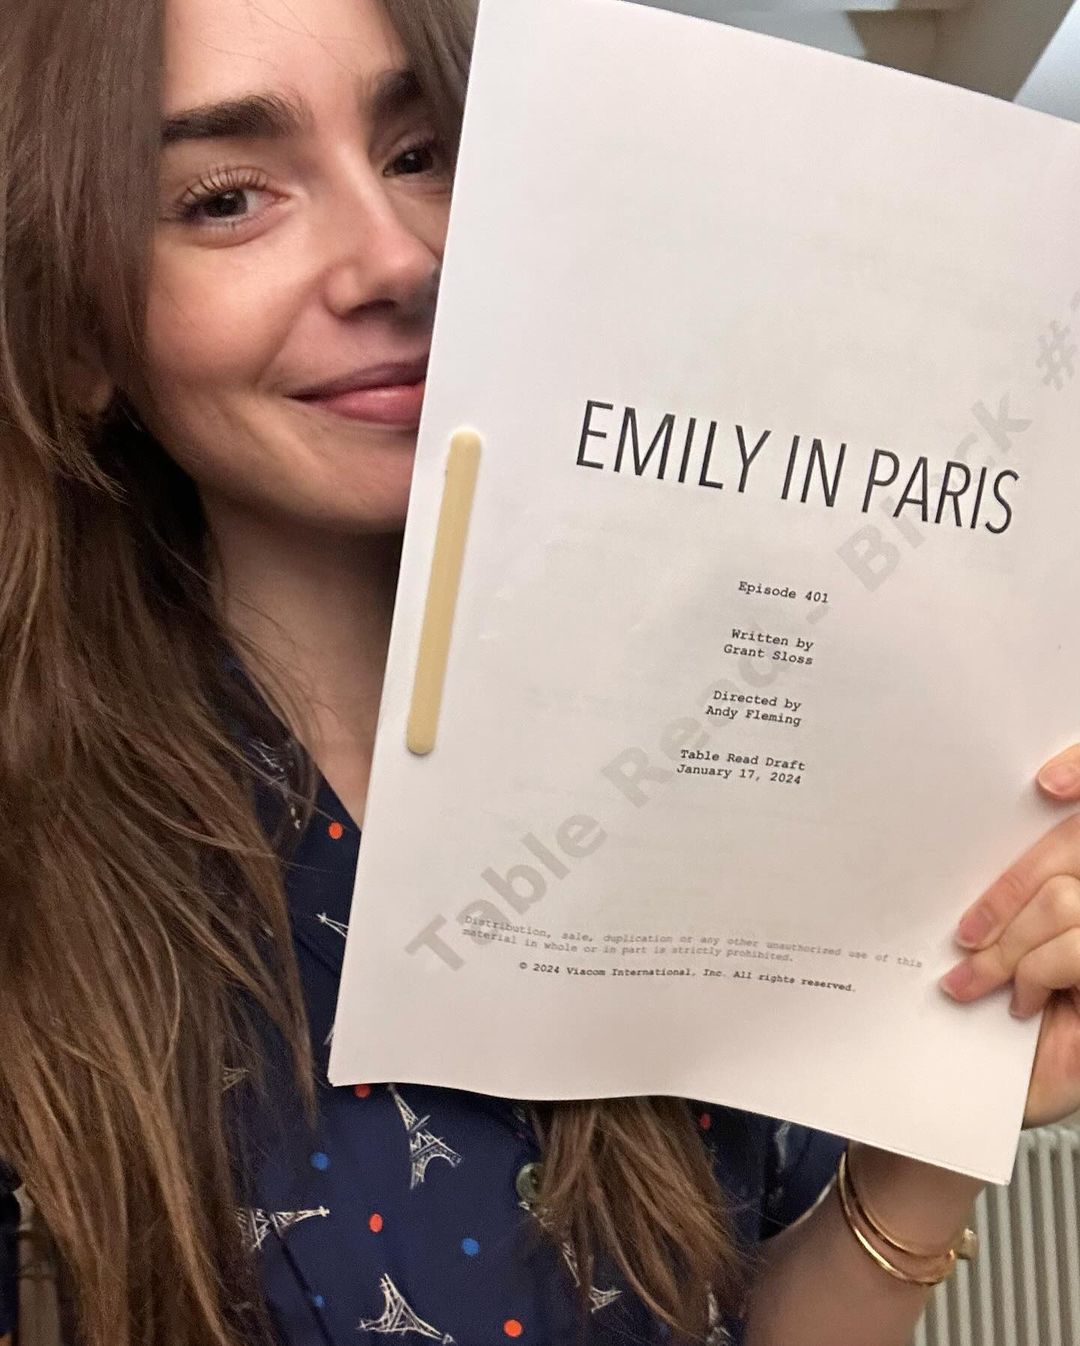 Η Lily Collins με το σενάριο της 4ης σεζόν της σειράς "Emily in Paris"